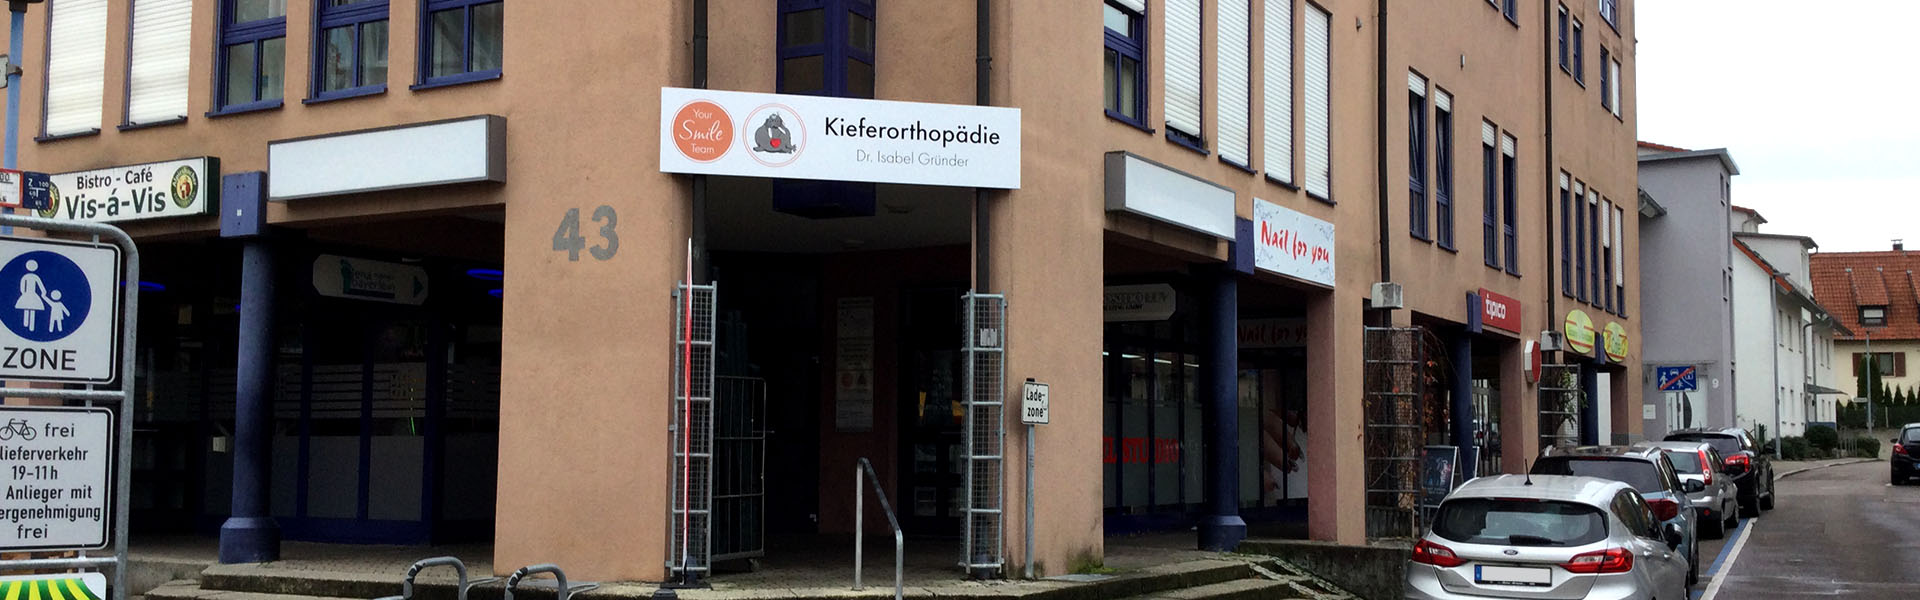 Firmenschild Filderstadt: Neue Beschilderung für die Kieferorthopädie von Dr. Isabel Gründer